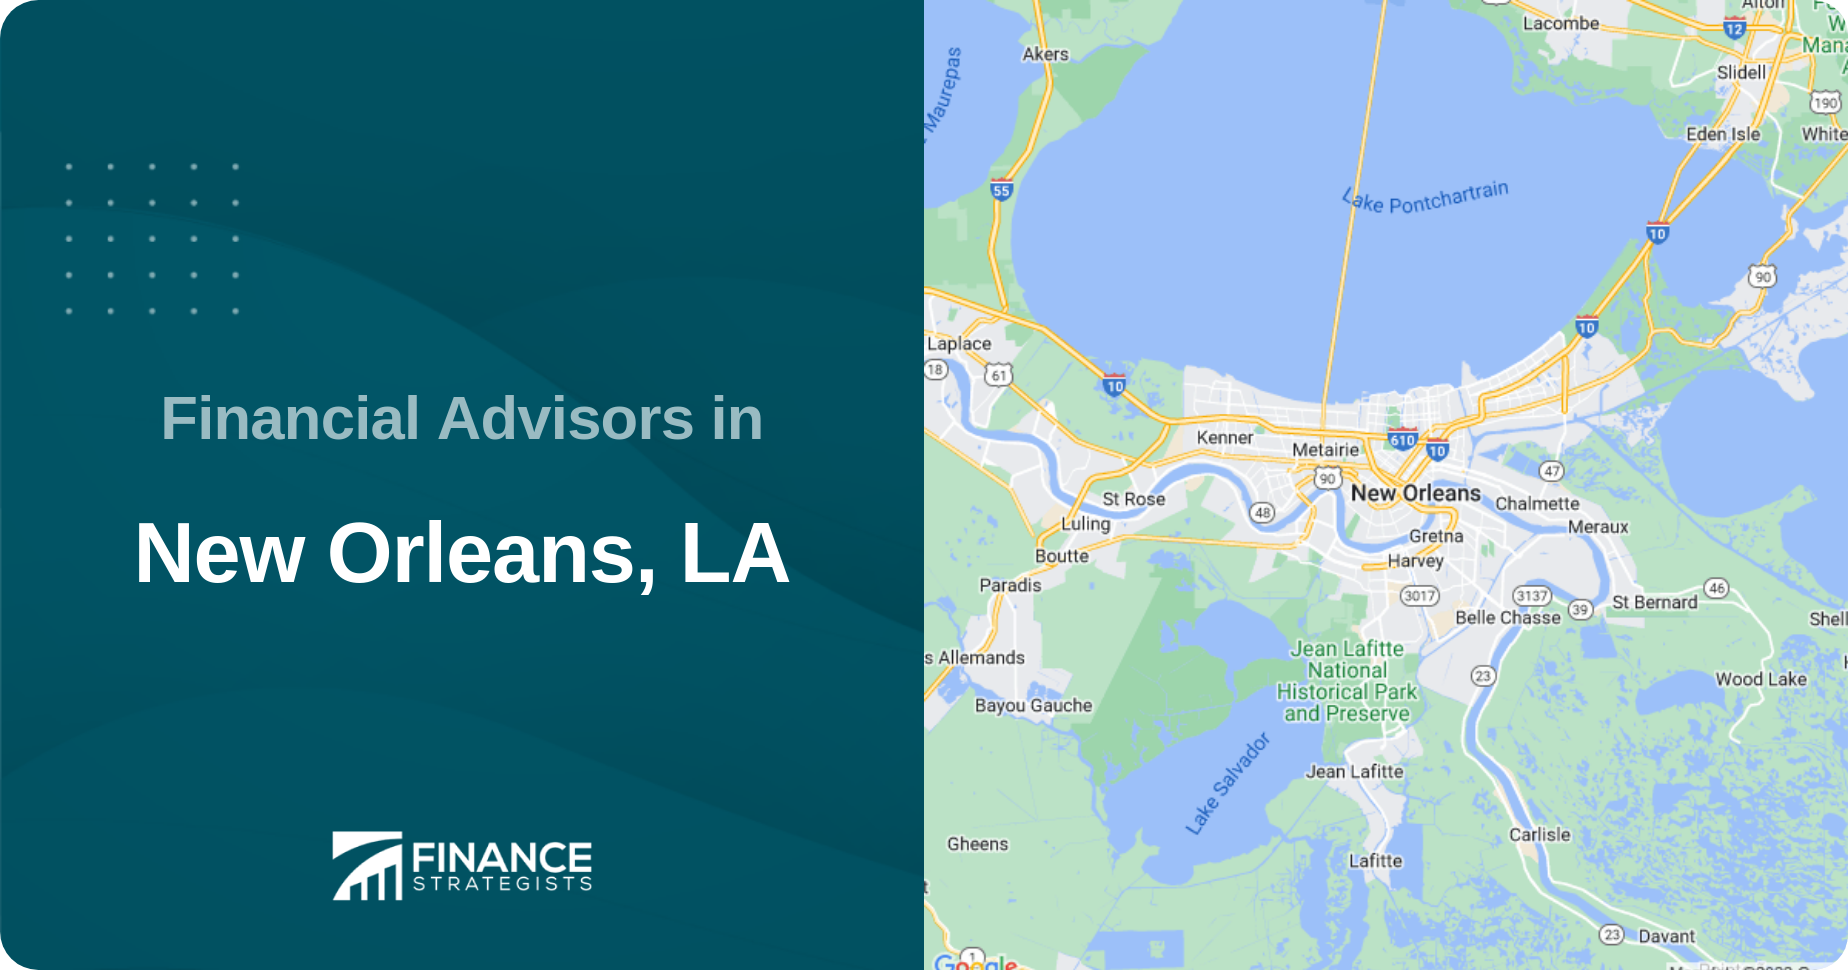 Financial Advisors in New Orleans, LA